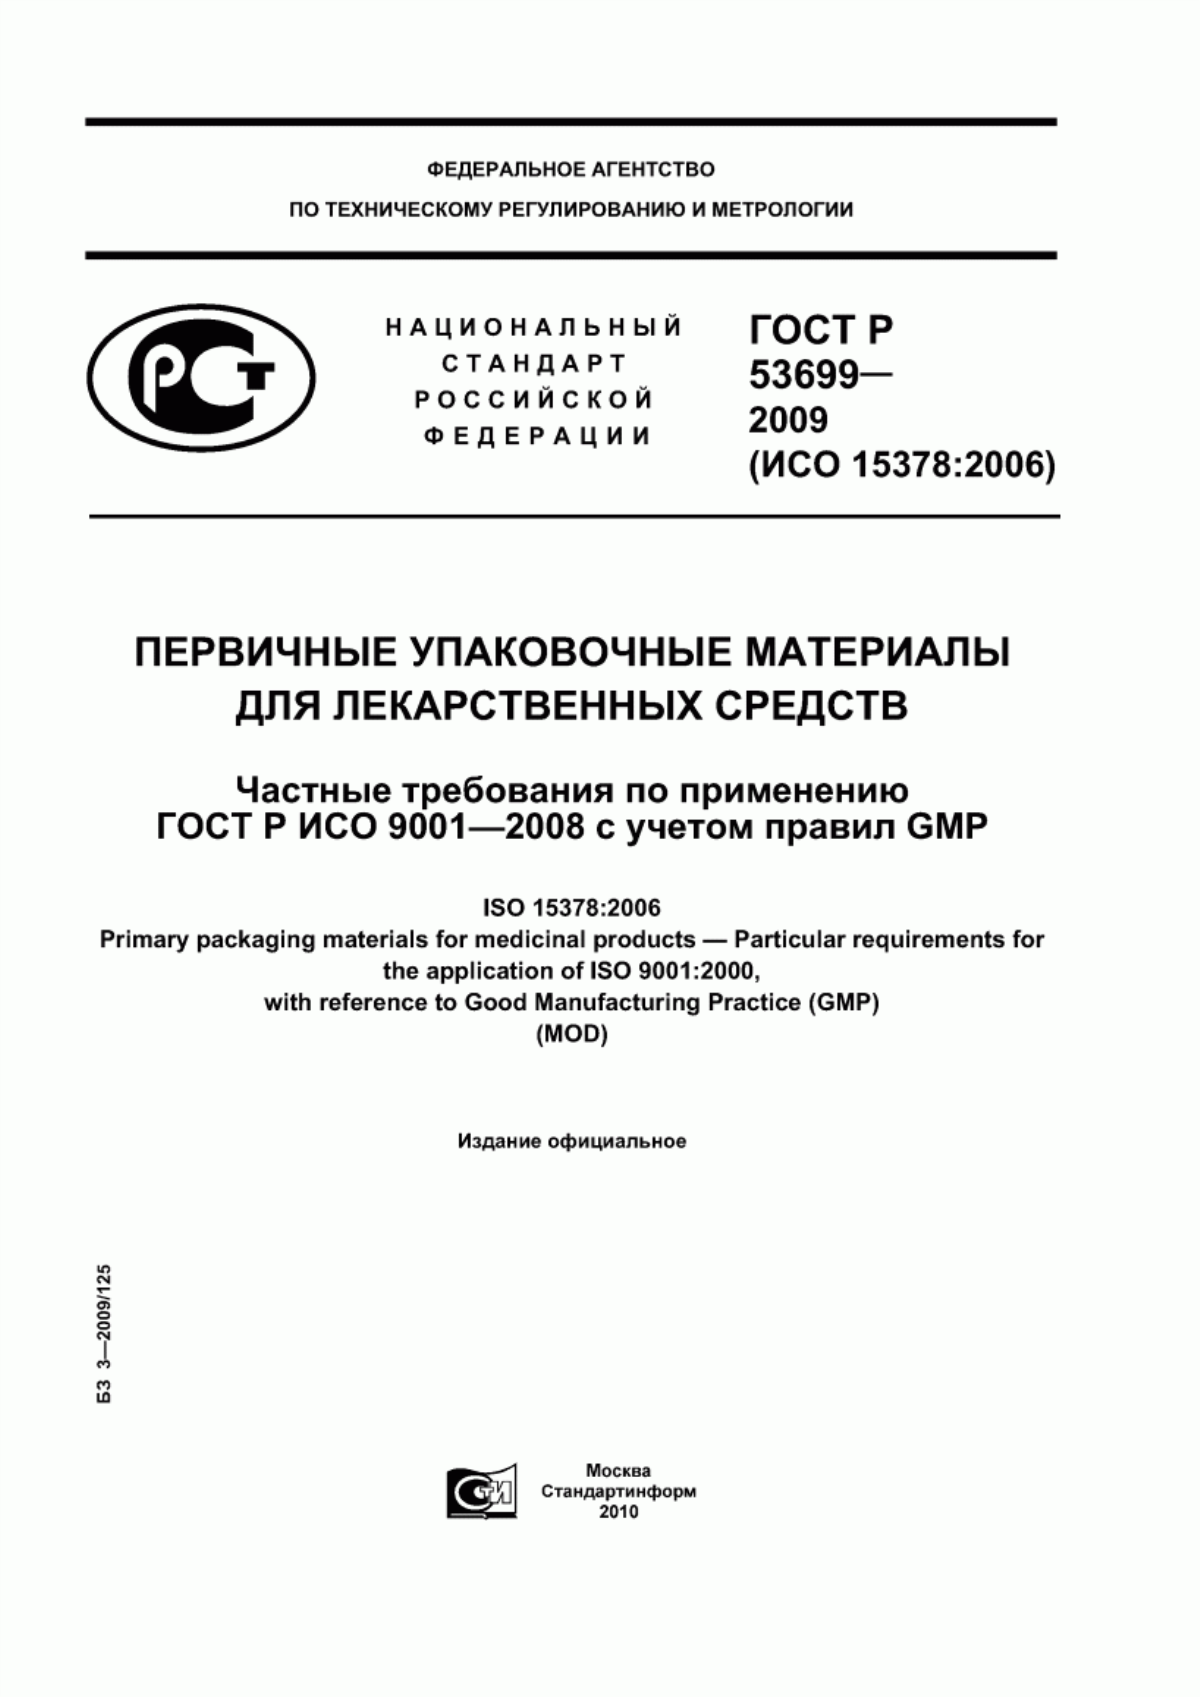 ГОСТ Р 53699-2009 Первичные упаковочные материалы для лекарственных средств. Частные требования по применению ГОСТ Р ИСО 9001-2008 с учетом правил GMP